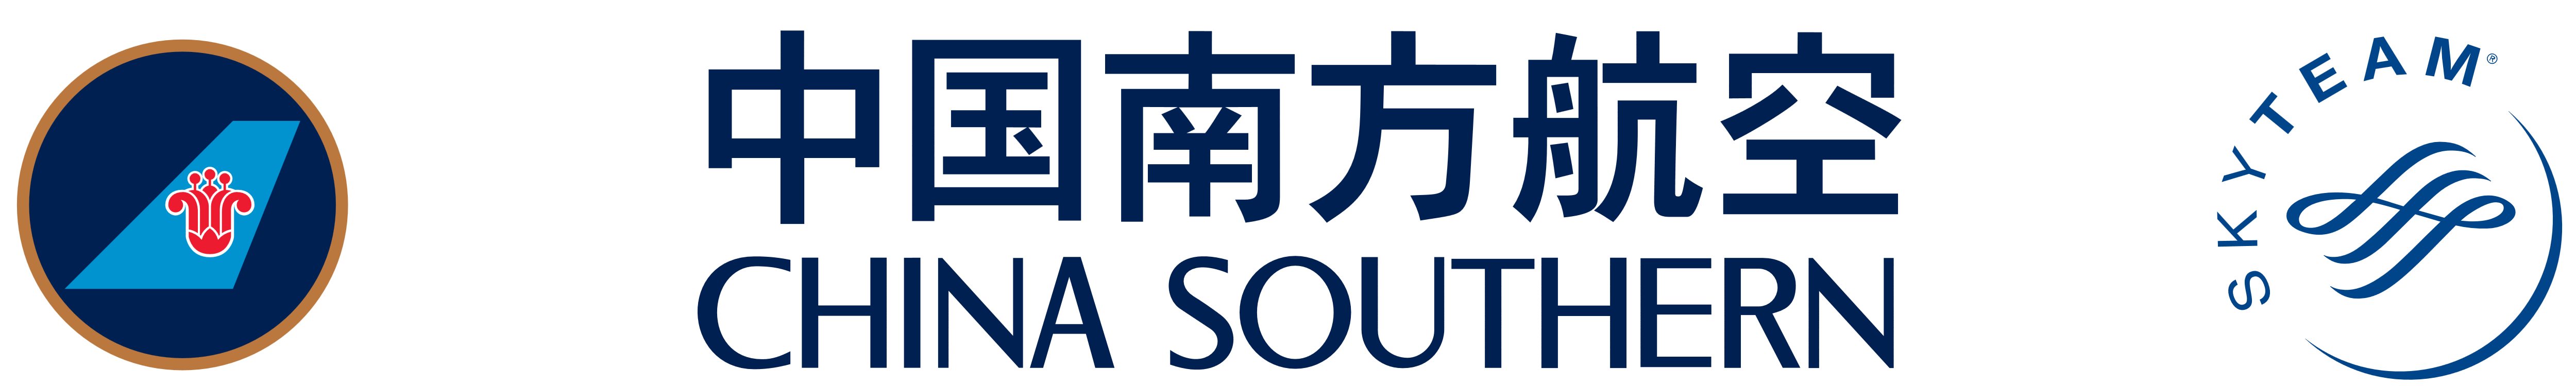 china-southern-logo China Sou